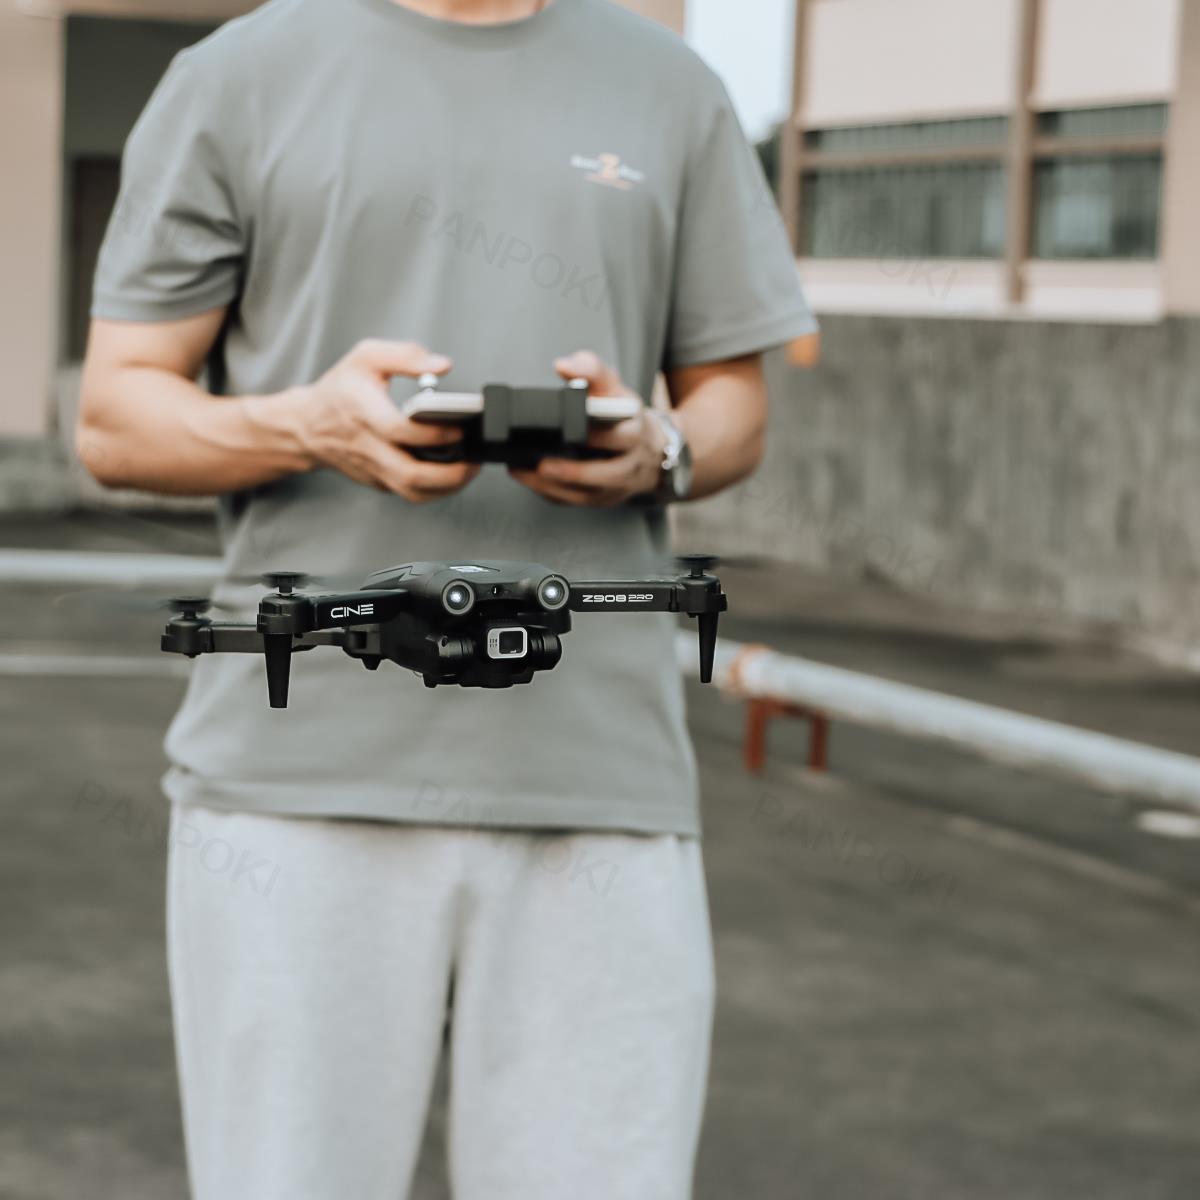 Pro 2.4G WIFI mini drone 4k Obstacle Avoidance